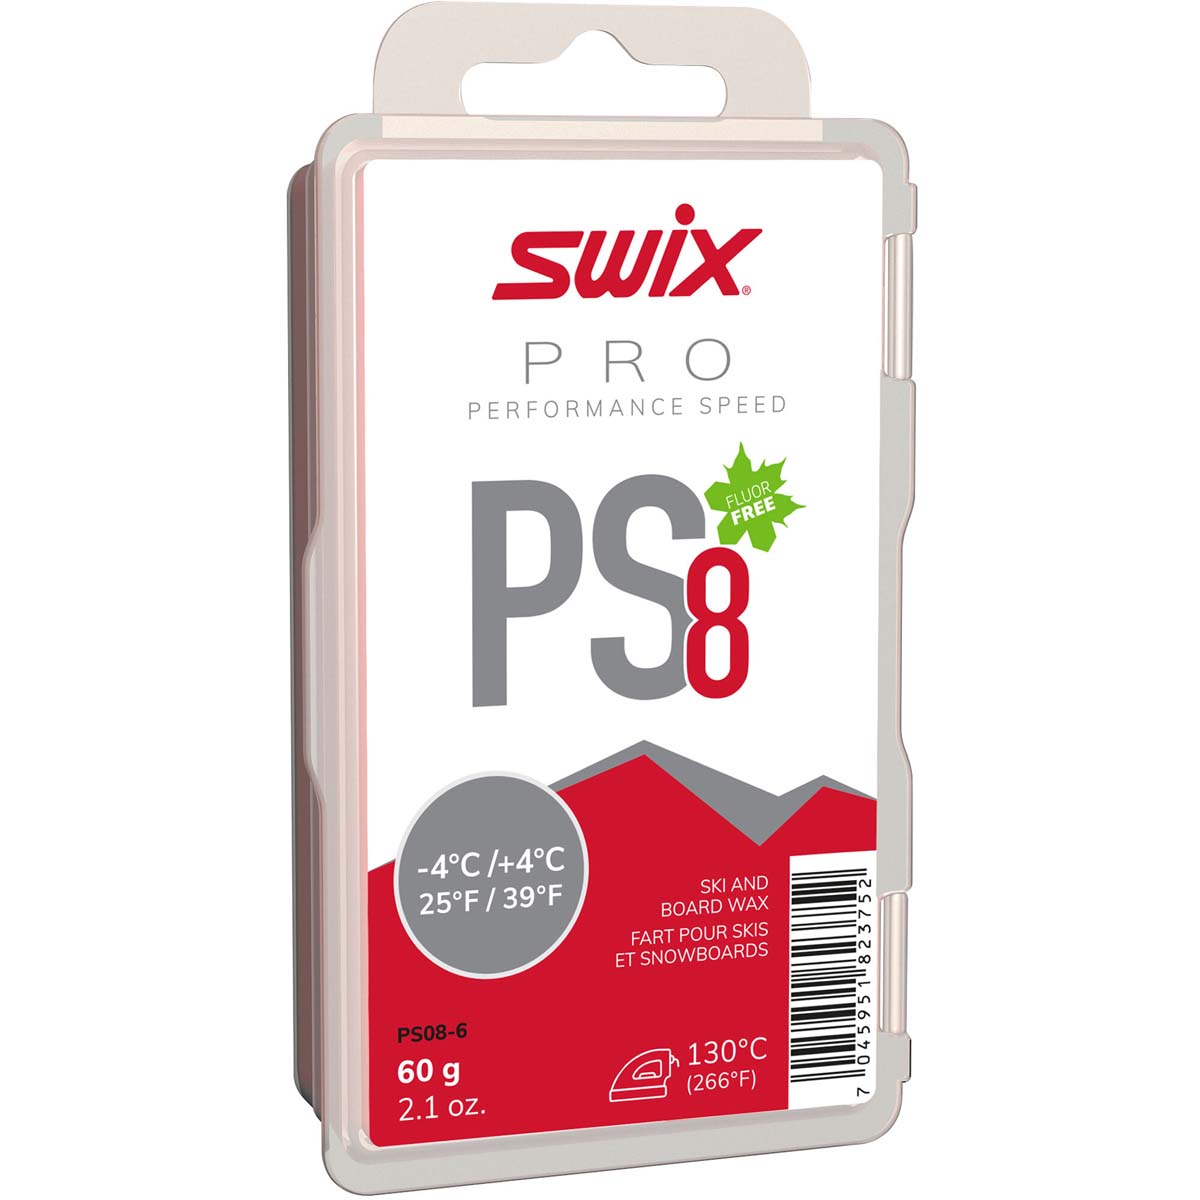 Skluzný vosk Swix Performance Speed, PS8 červený,-4/+4°C, 60g